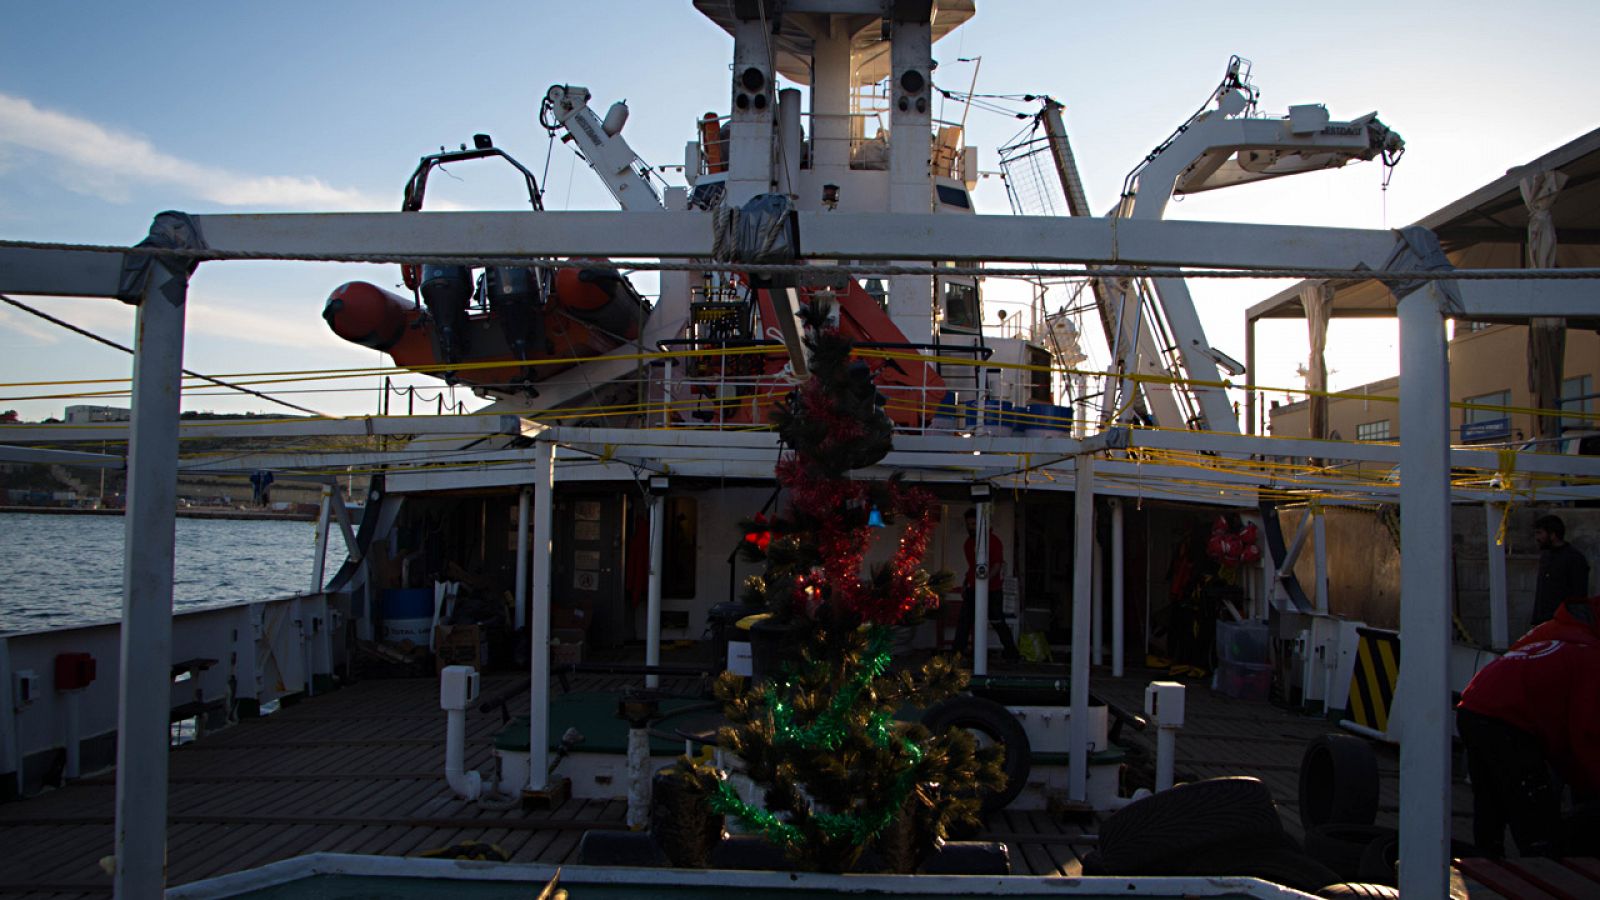 Un pequeño árbol navideño decora la cubierta del 'Open Arms', el barco de la ONG ProActiva; de fondo, suenan villancicos